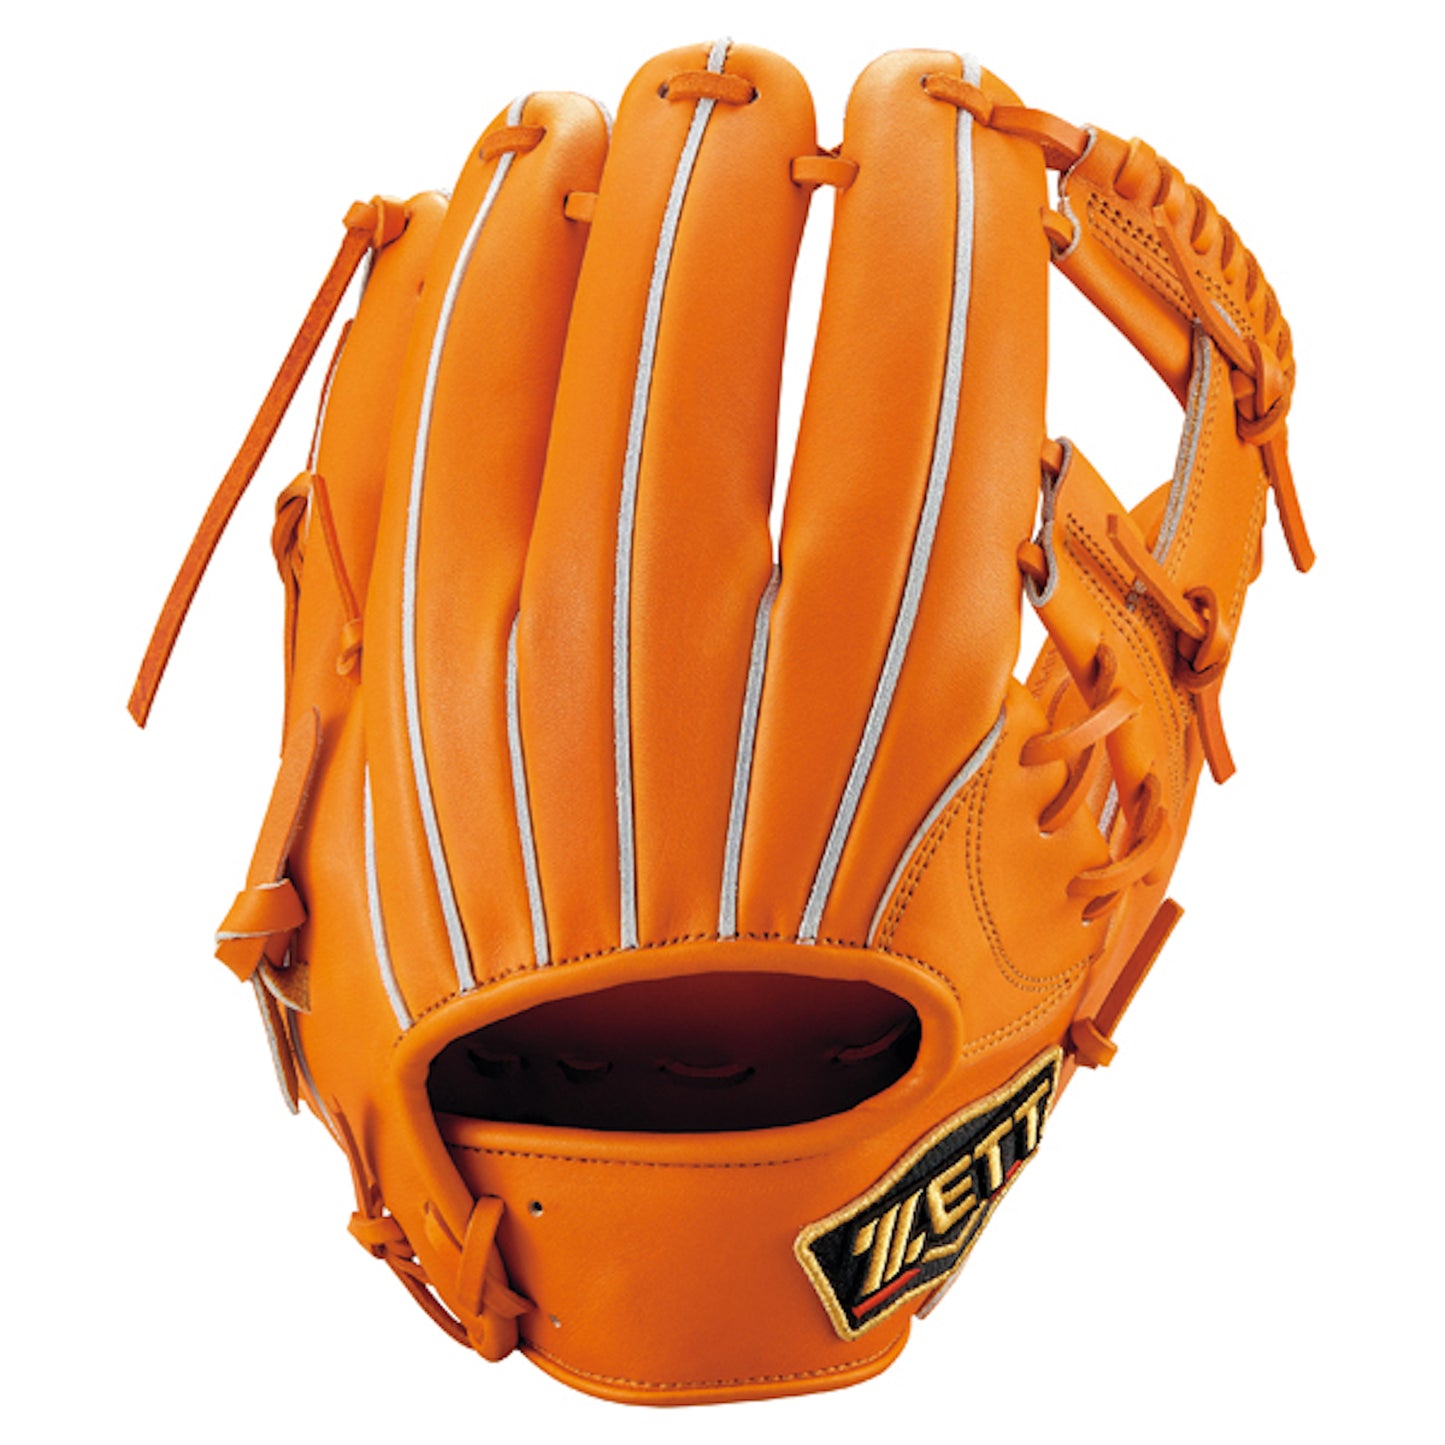 ZETT PROSTATUS Baseball Infield Glove BPROG766